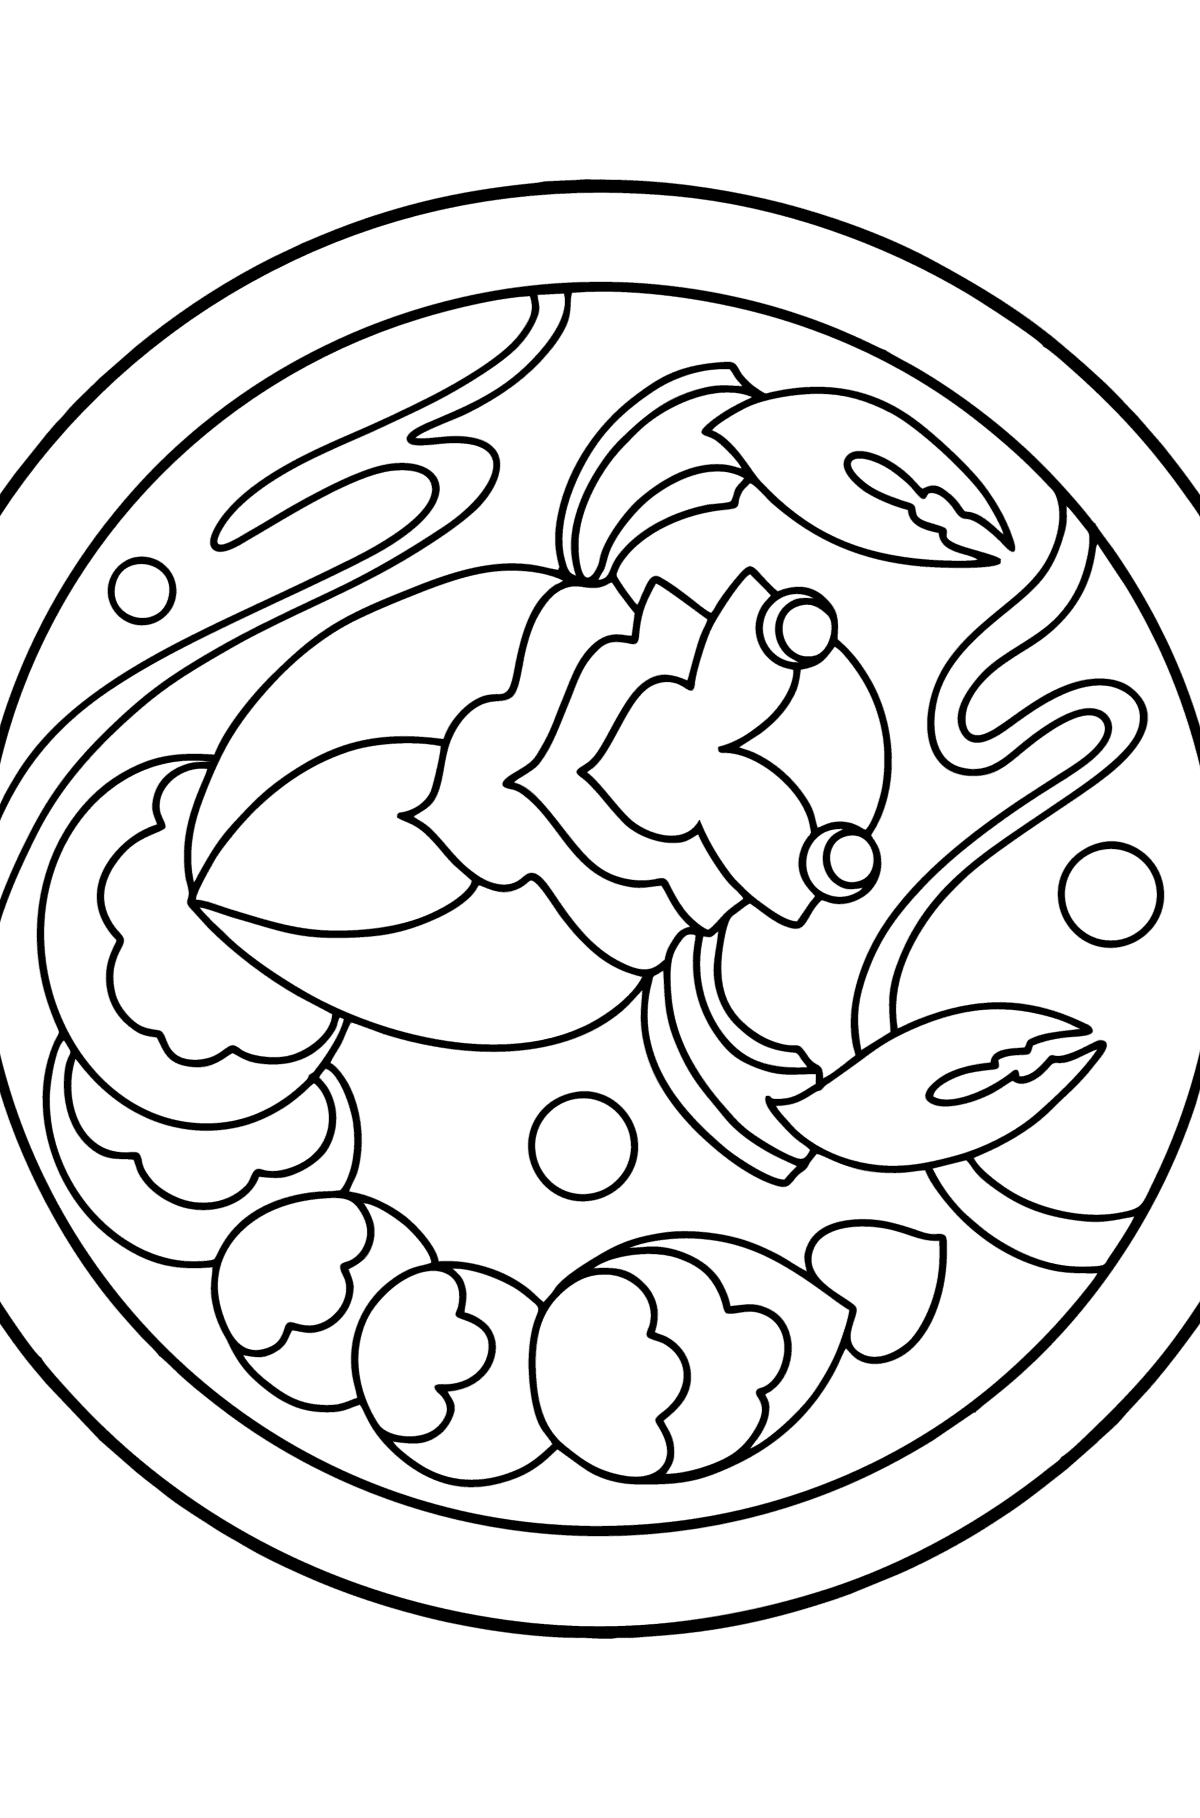 Раскраска знак зодиака Скорпион для детей - Картинки для Детей